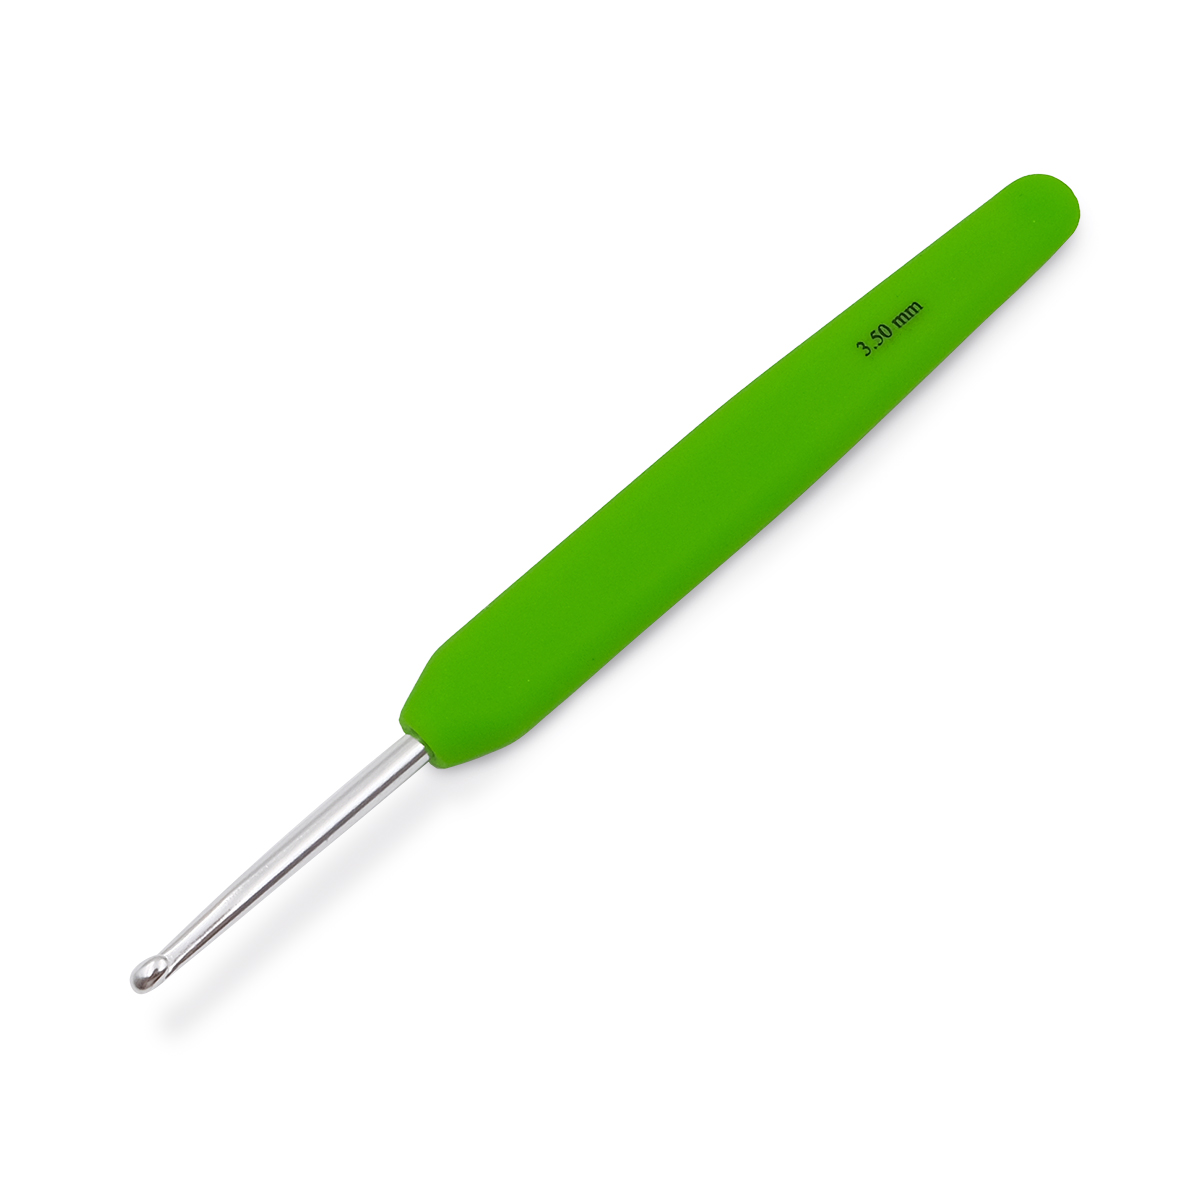 Крючок для вязания с эргономичной ручкой Waves 3,5мм, алюминий, серебро/магнолия, KnitPro